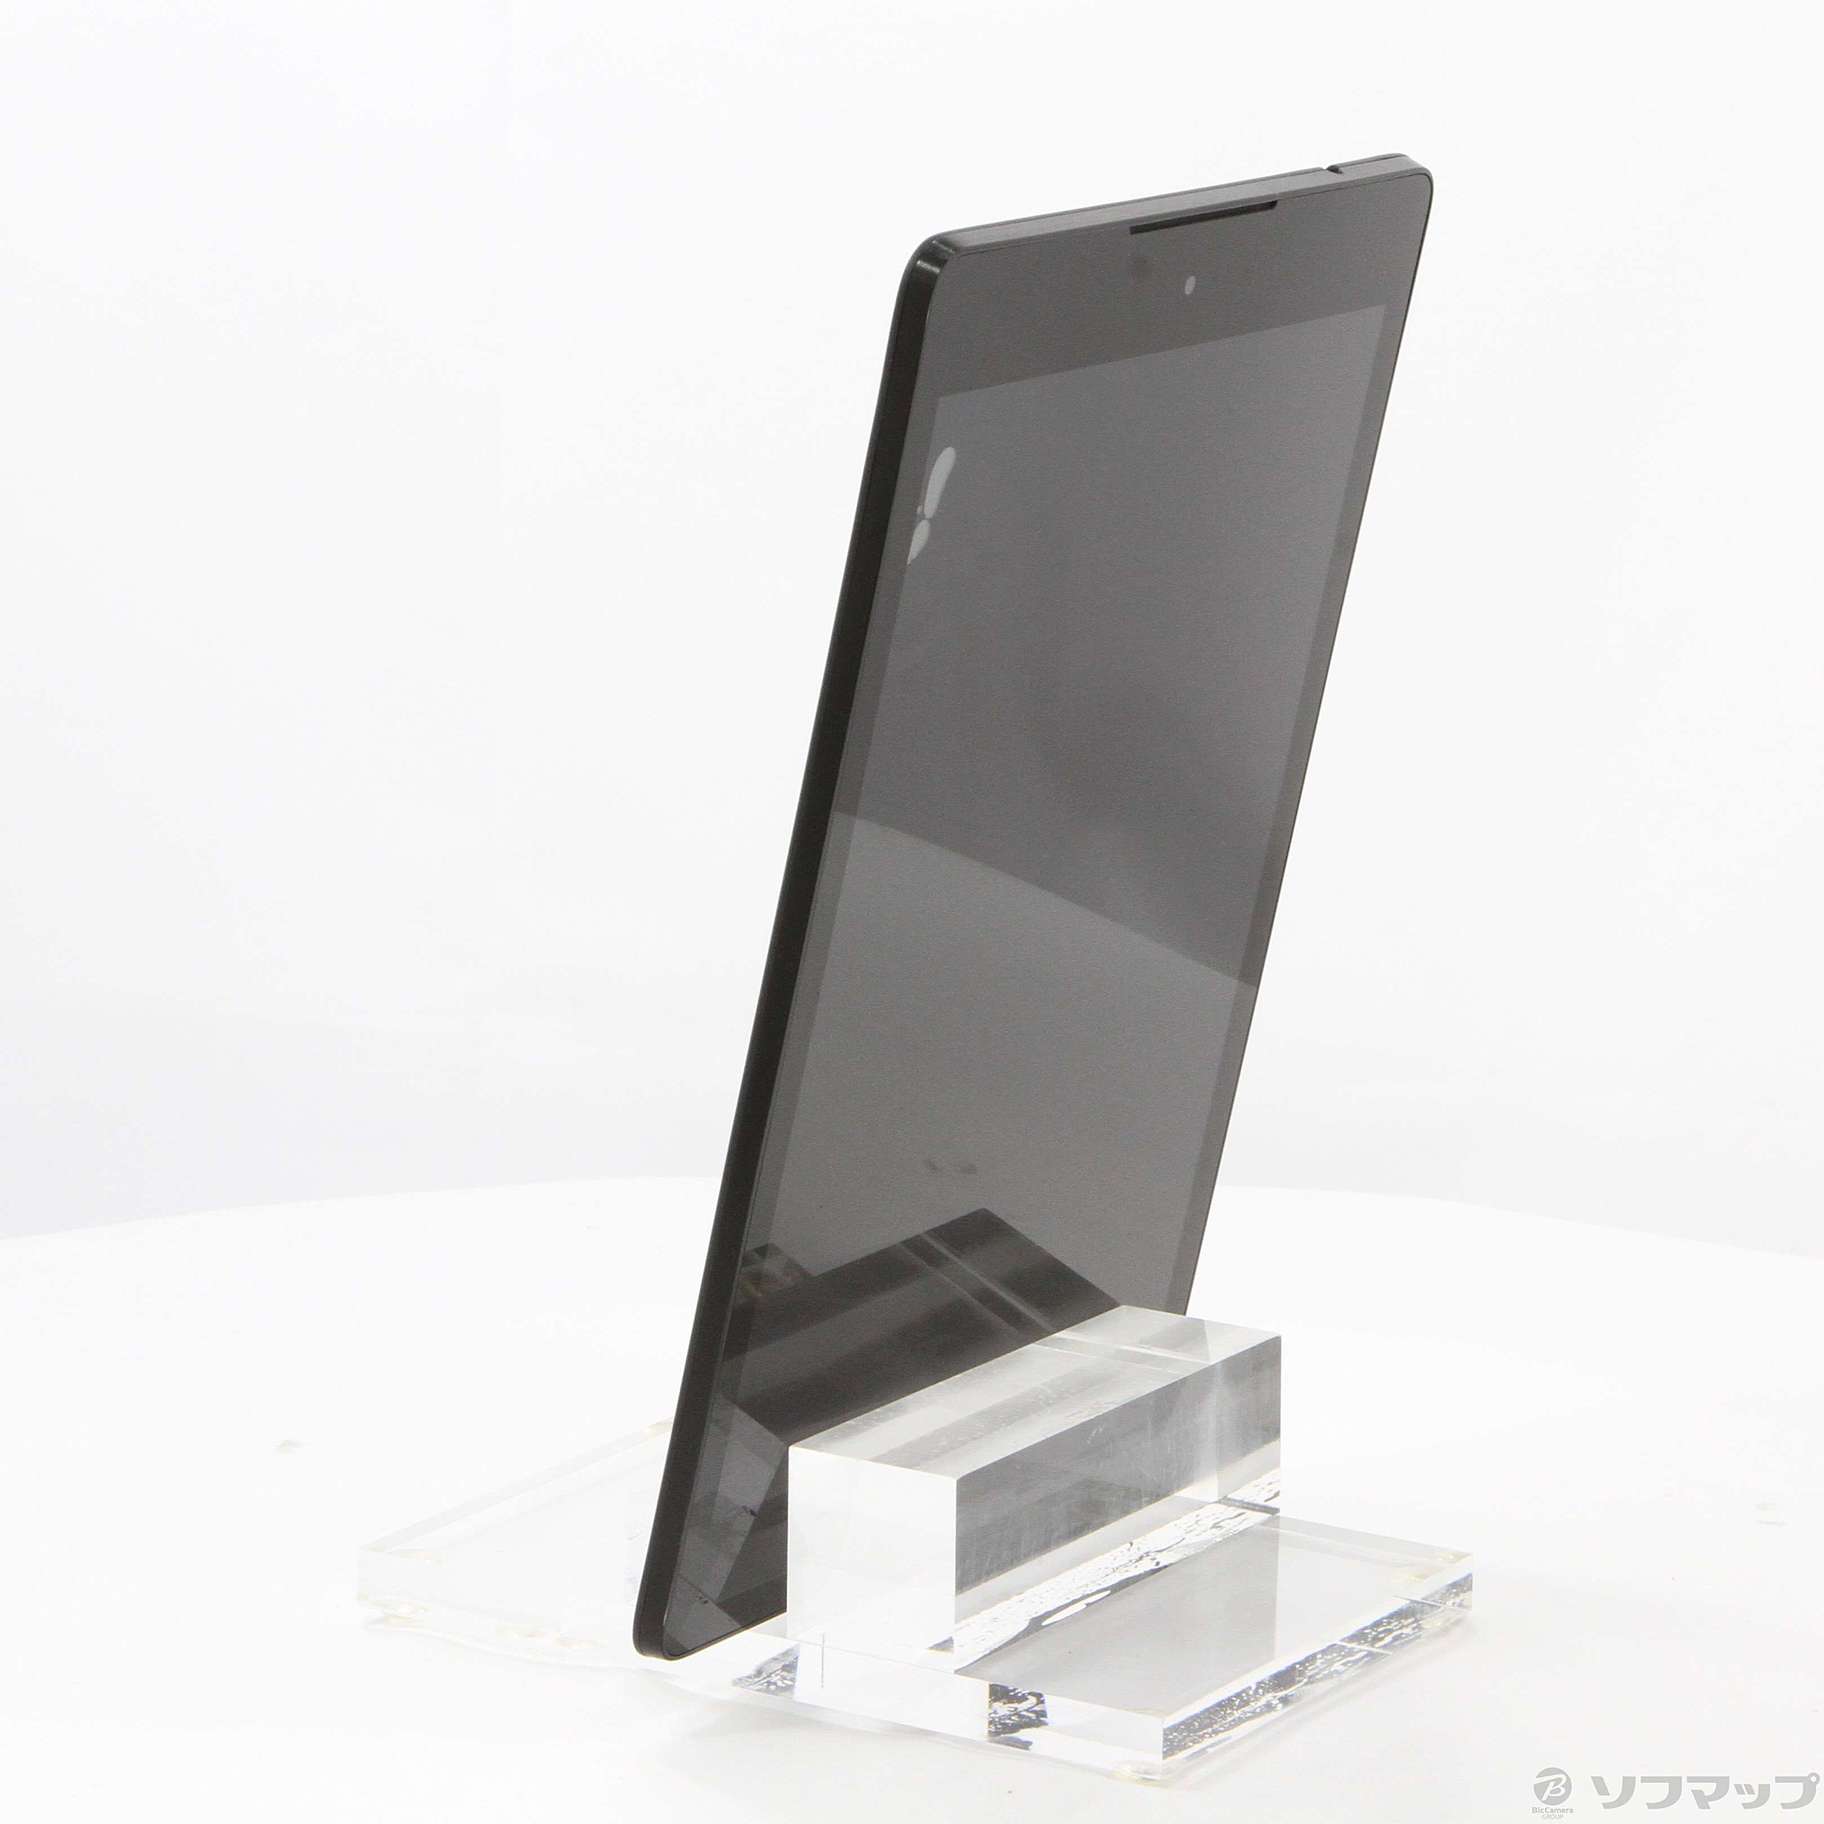 中古】Nexus9 16GB インディゴブラック 99HZF035-00 Wi-Fi